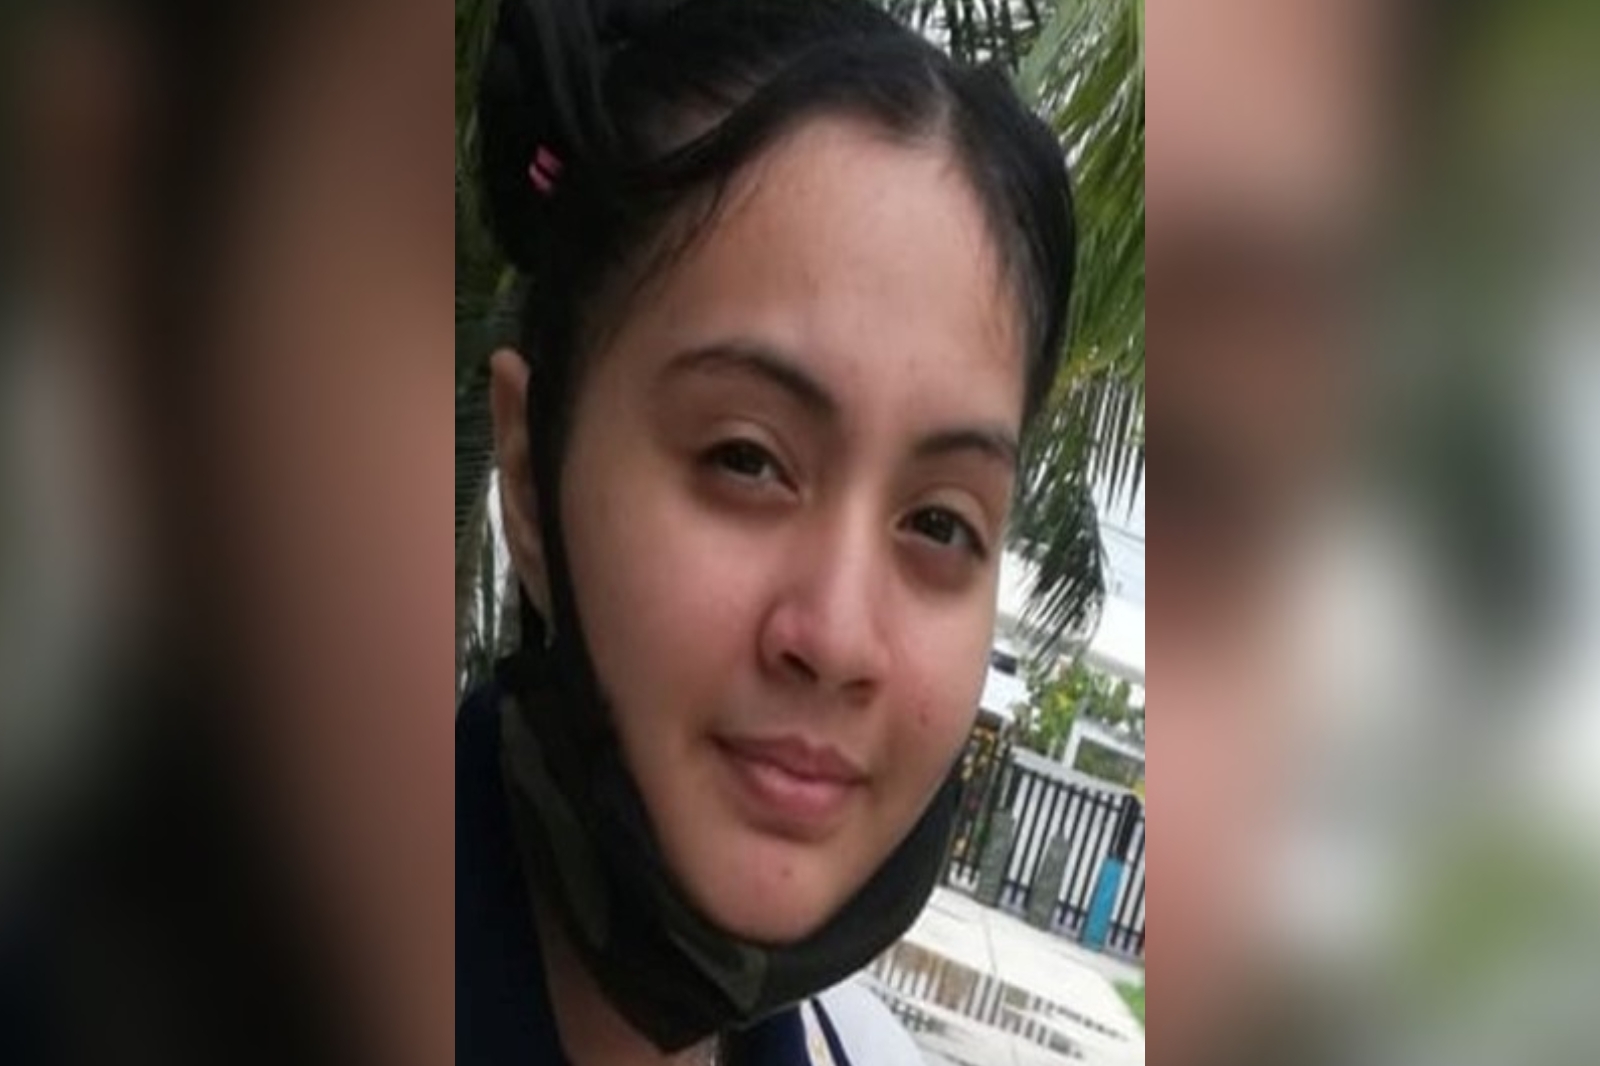 Alerta Ámber Quintana Roo: Reportan desaparición de menor de 16 años en Cancún